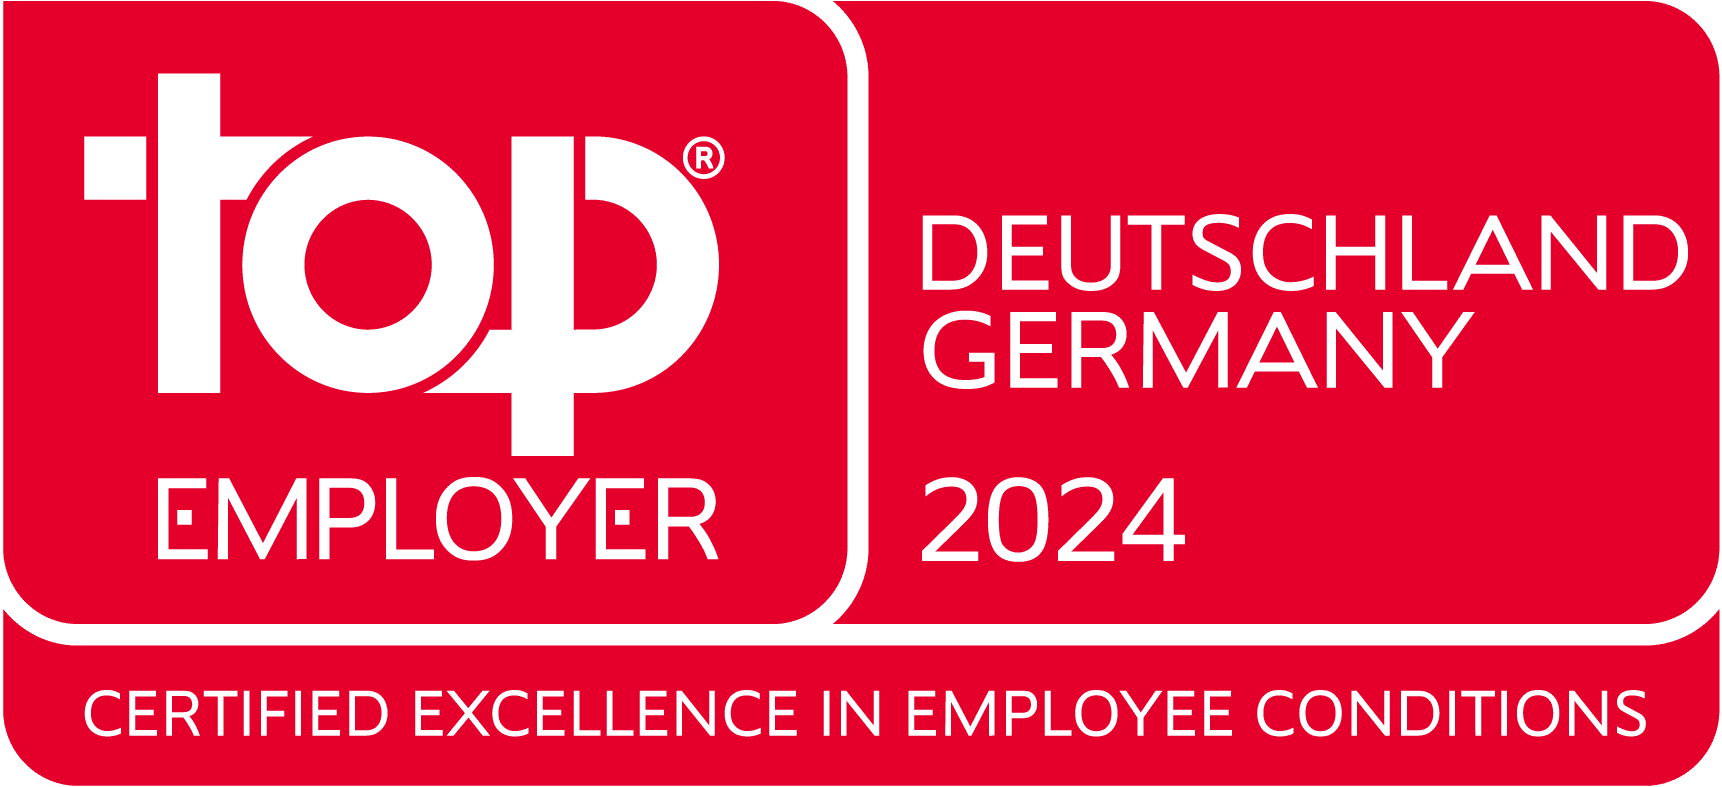 Logo von Top Employer Germany 2024. Weiße Schrift vor rotem Hintergrund.